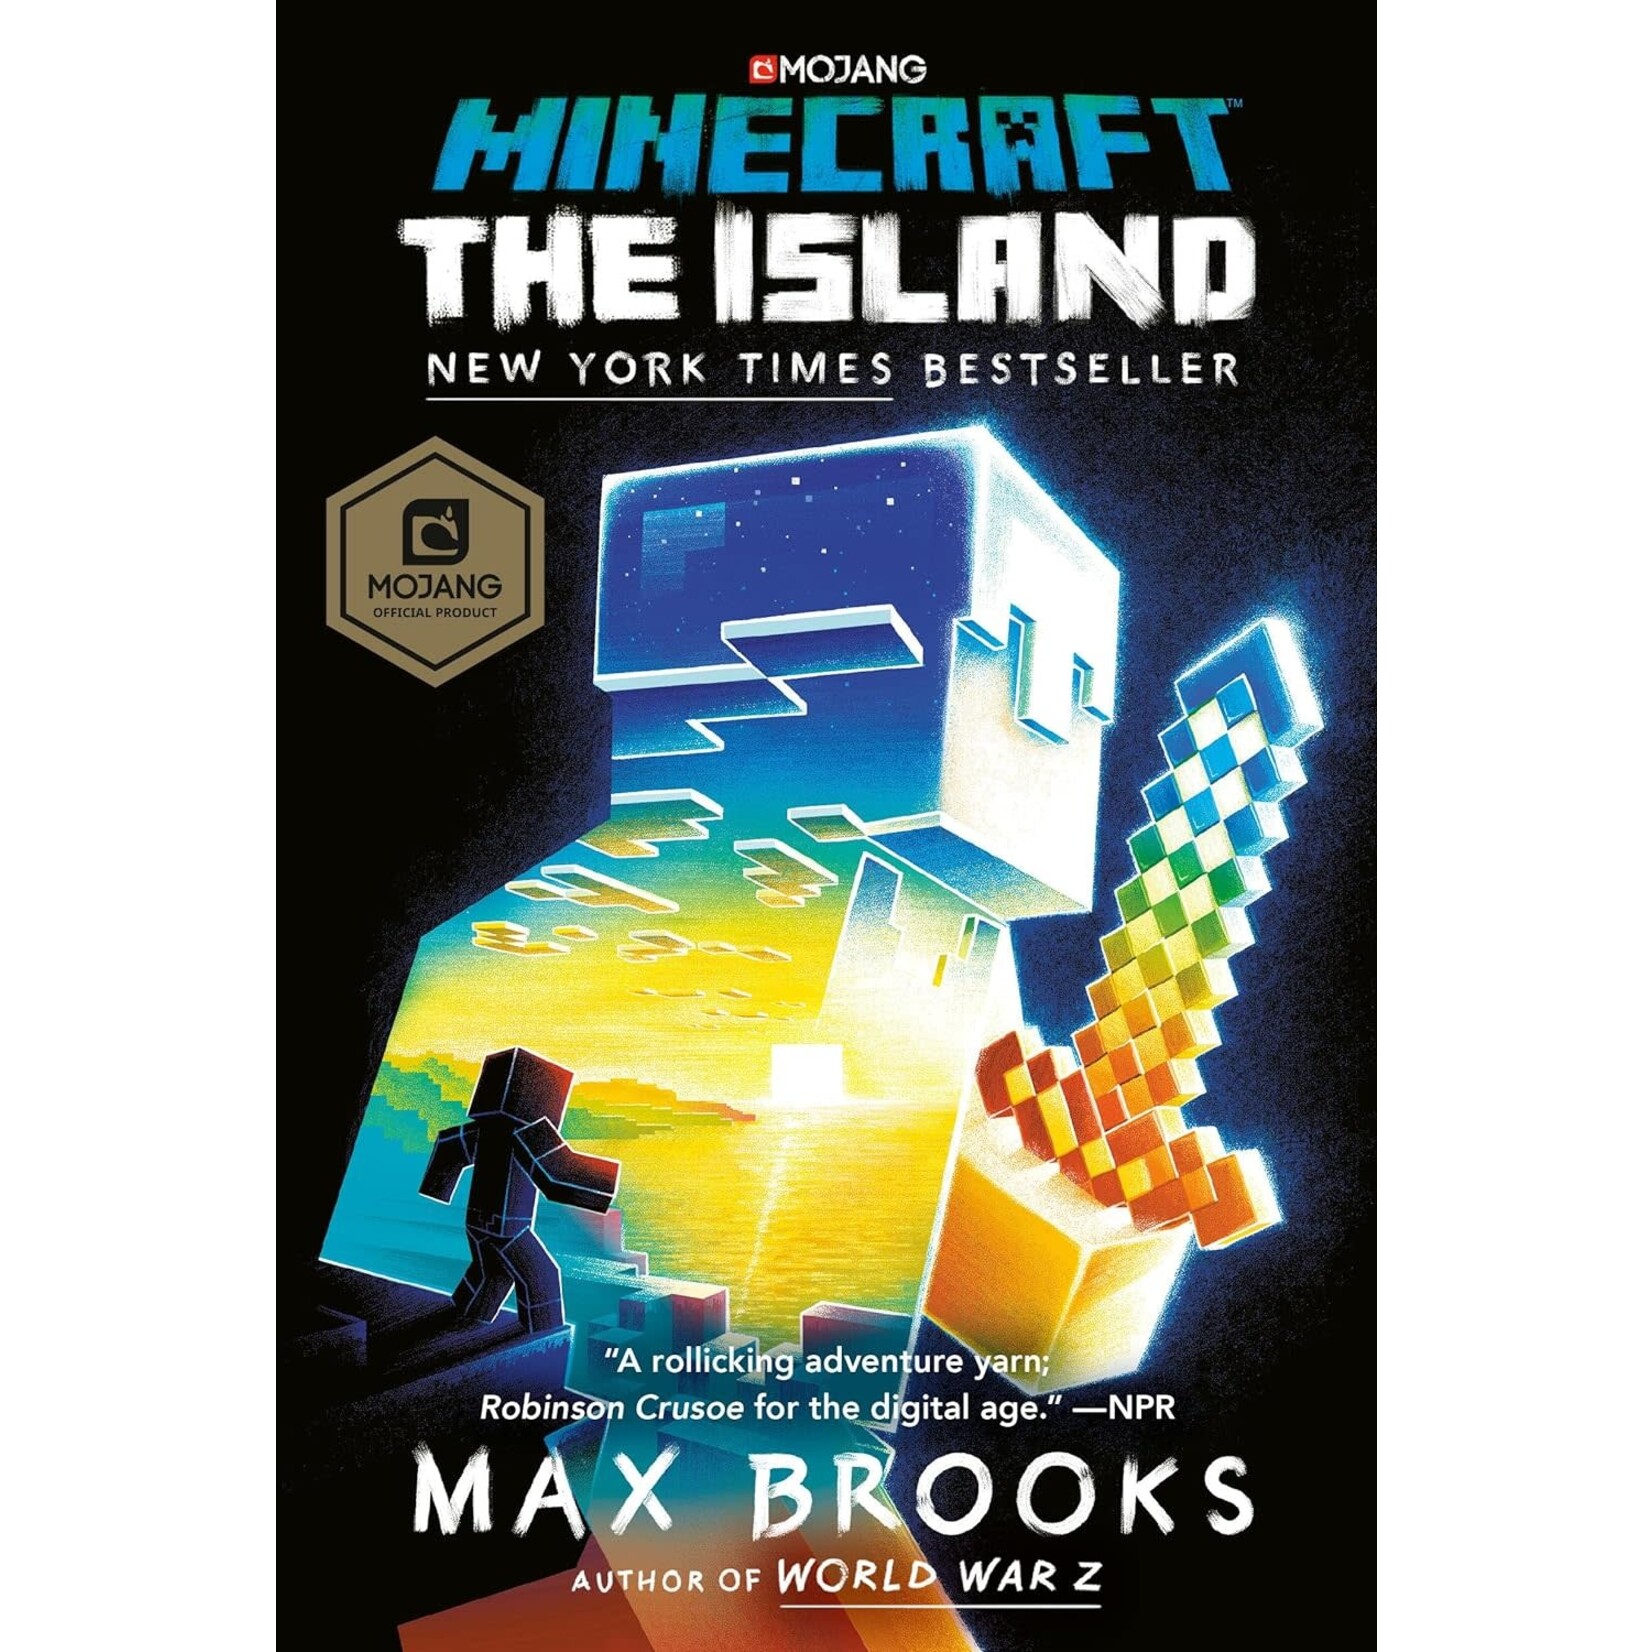 Minecraft: The Island: An Official Minecraft Novel